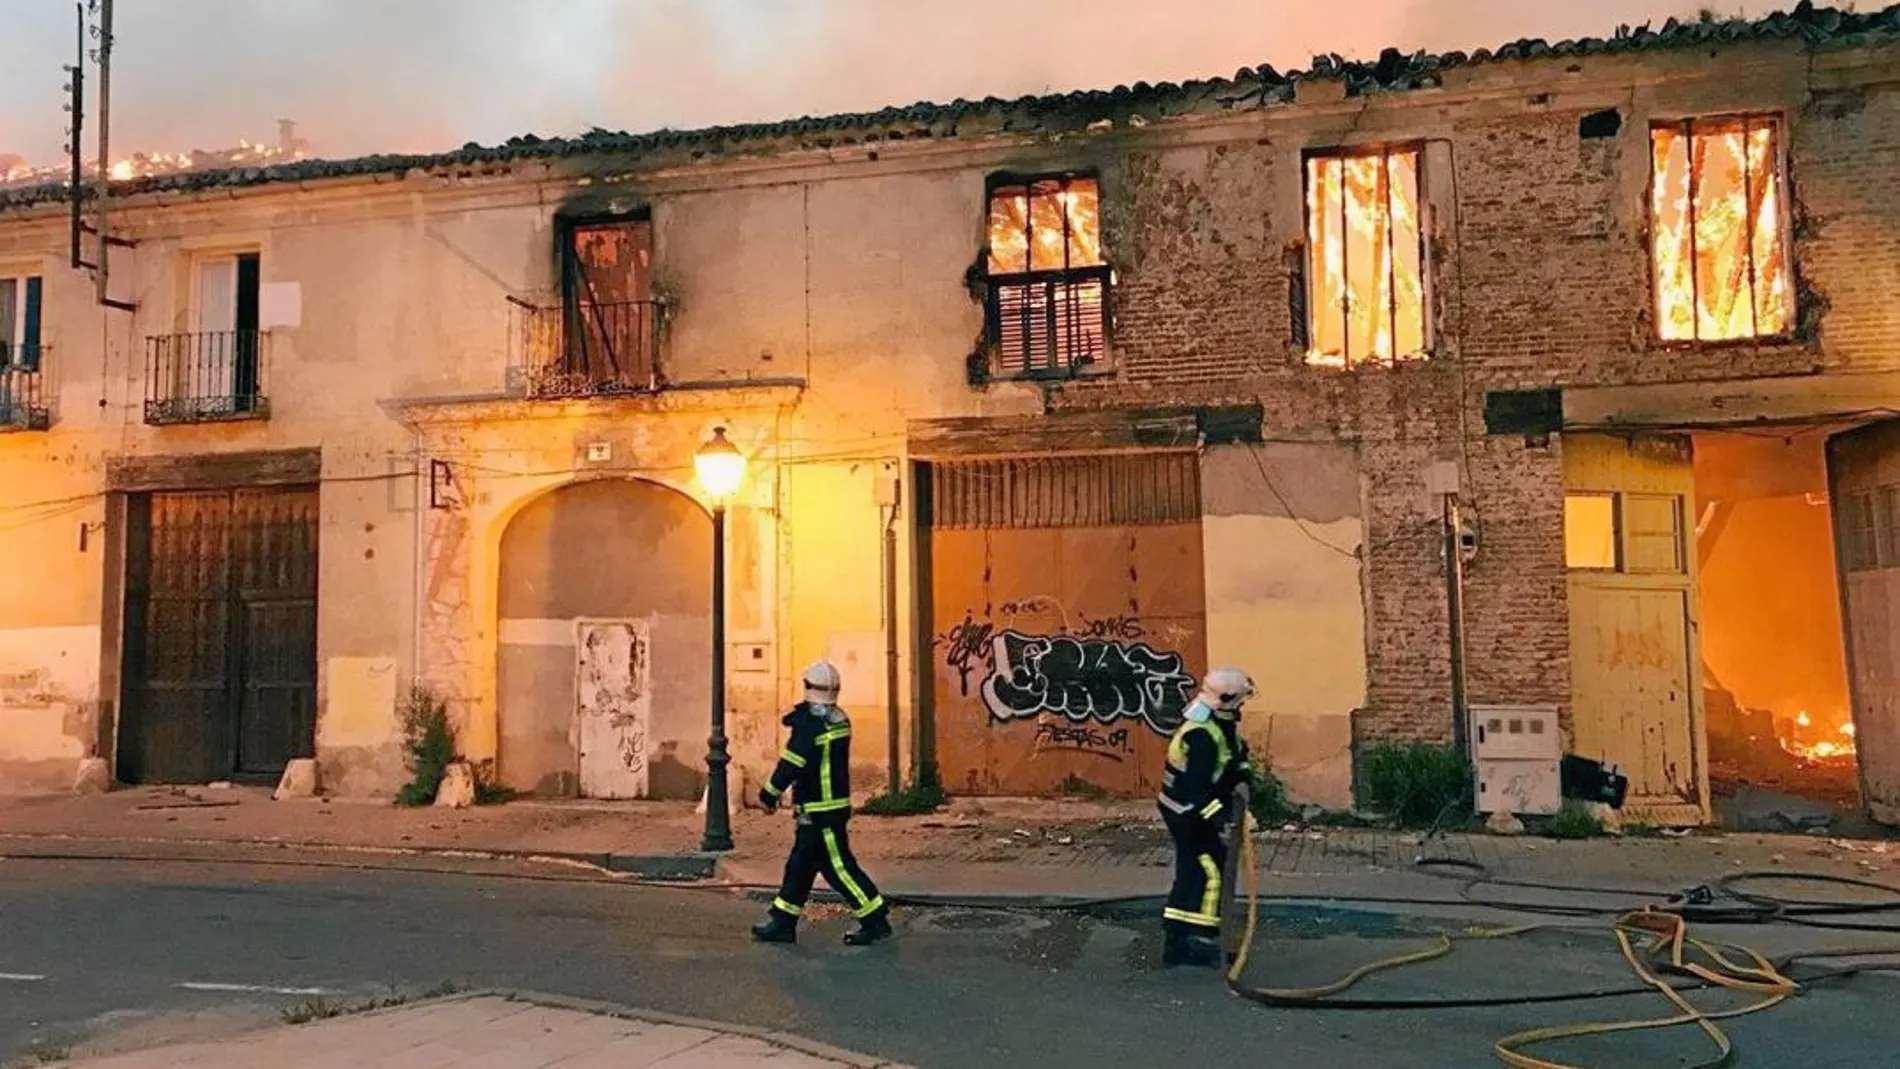 El Palacio de Osuna amaneció en llamas el pasado miércoles. Los bomberos dieron el fuego por extinguido el viernes